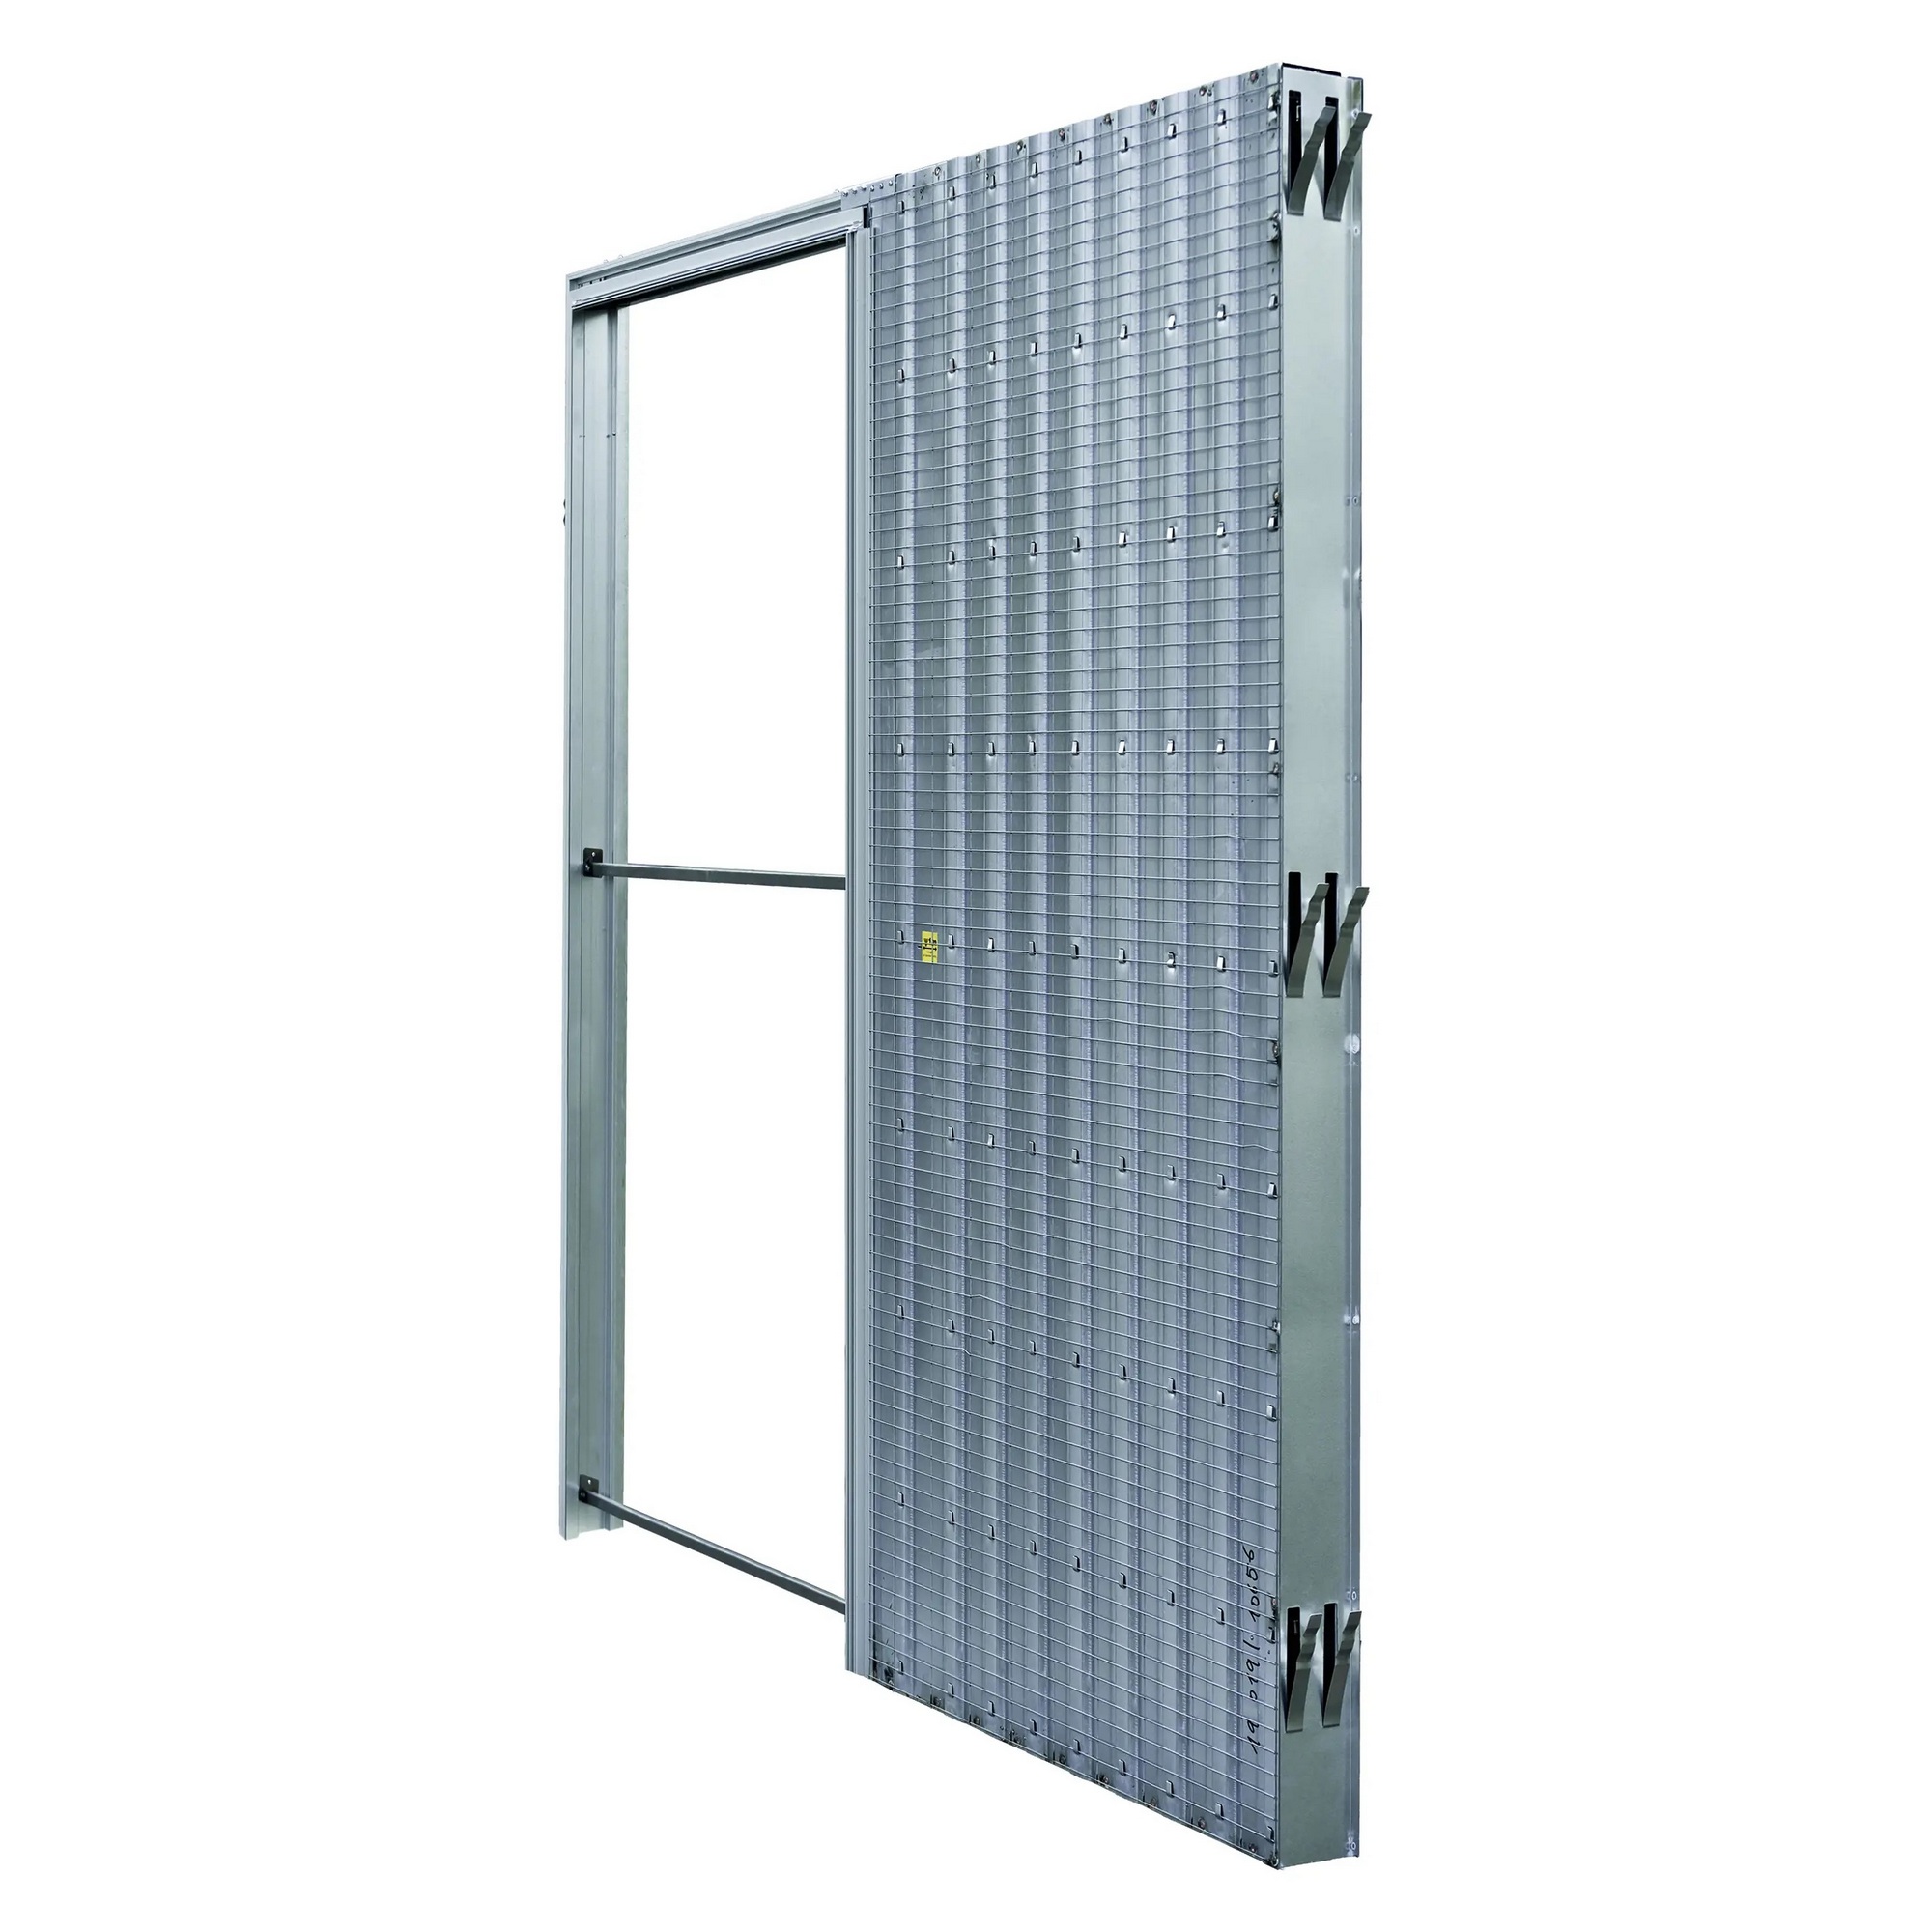 Pouzdro pro posuvné dveře JAP AKTIVE standard 1100 mm do zdiva JAP